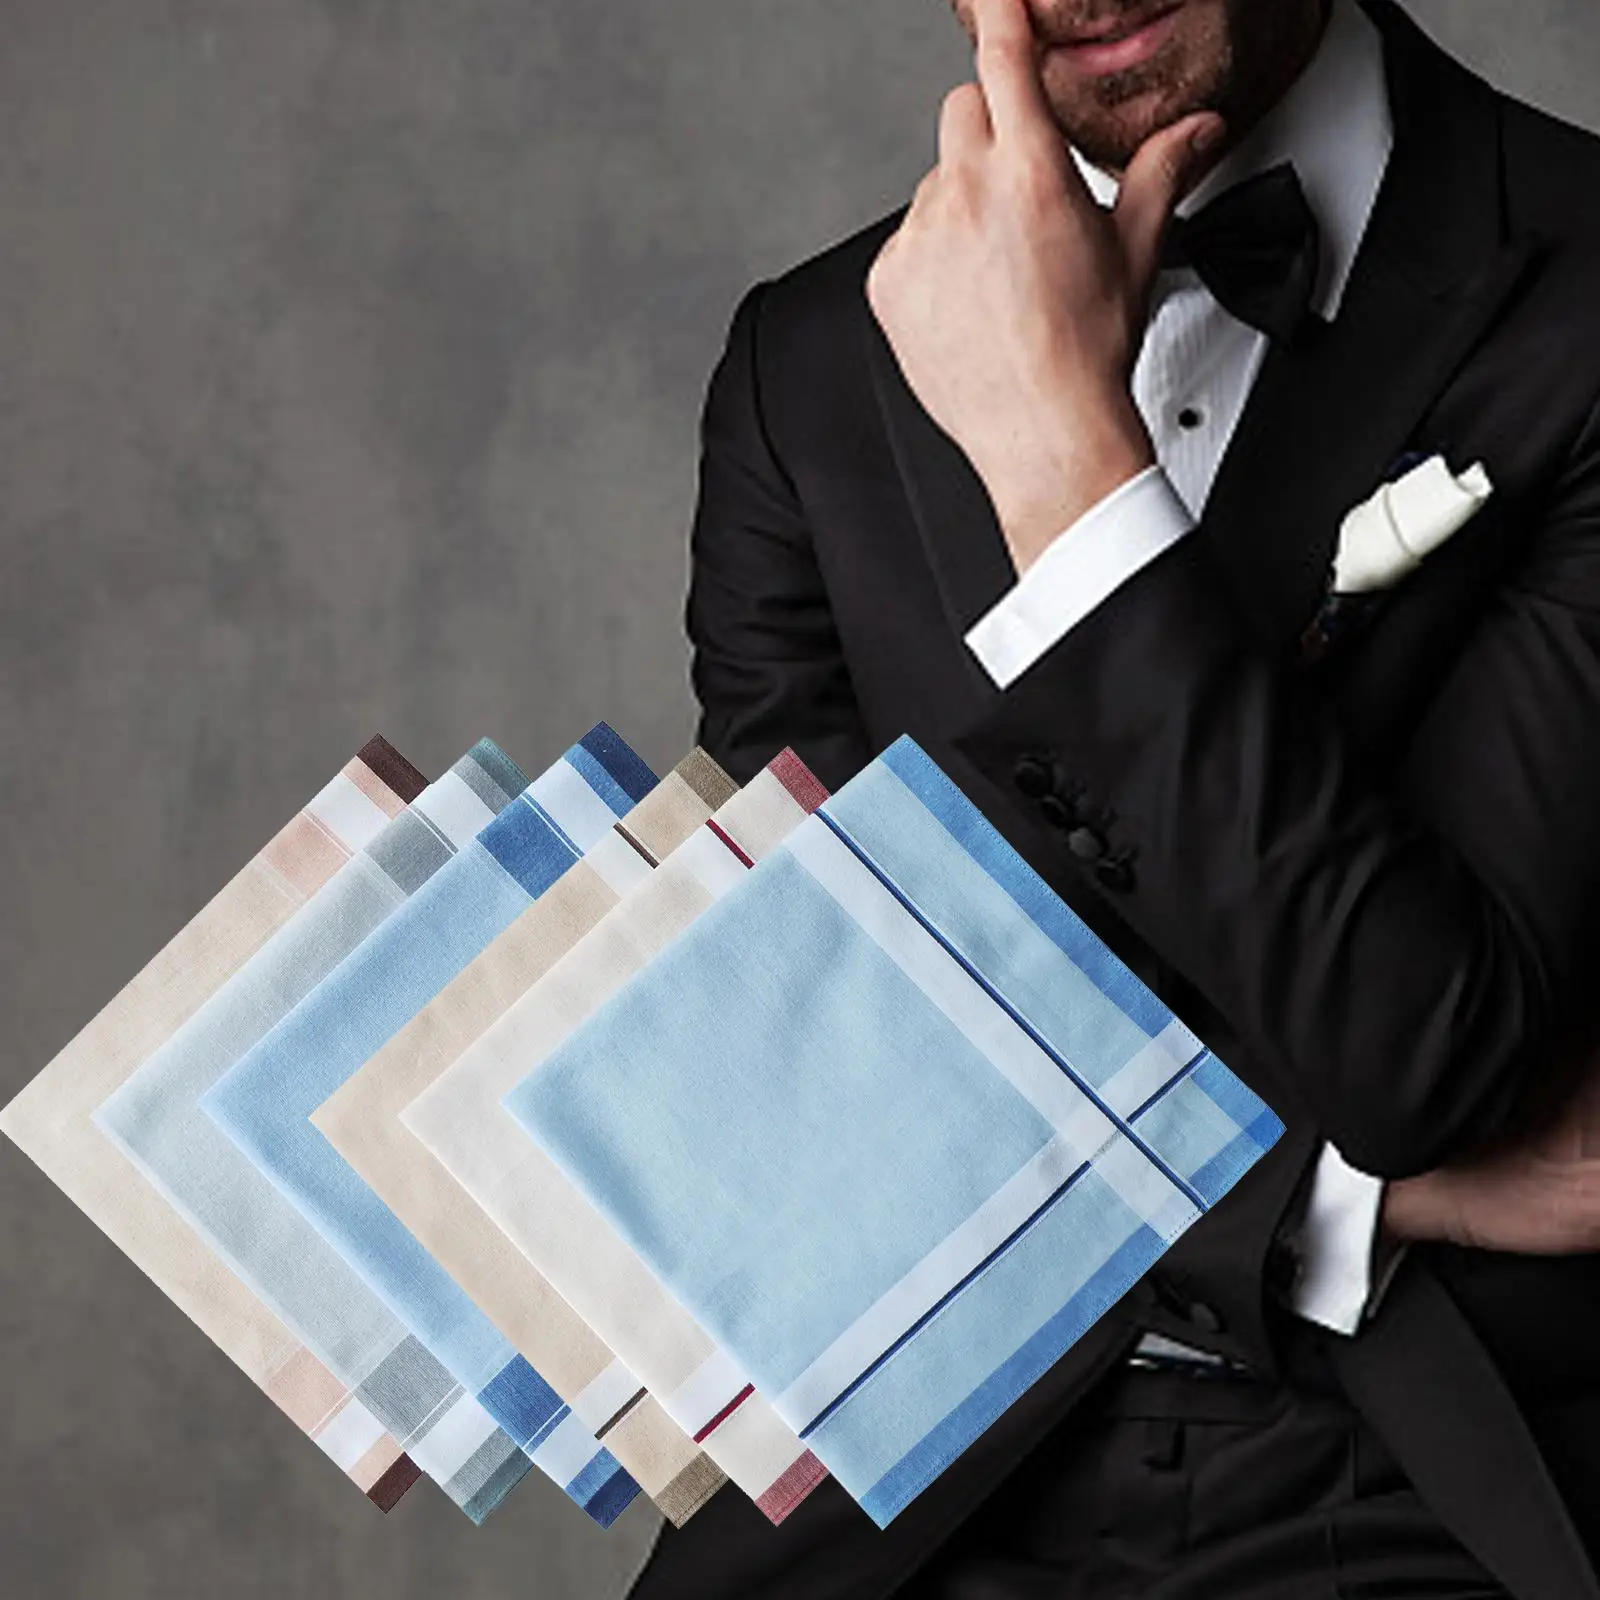 6x Cotton Men`s Handkerchiefs Assorted Color 16inch Pocket Square Hankies Hanky for Casual Formal Grandfathers Suit Gentlemen